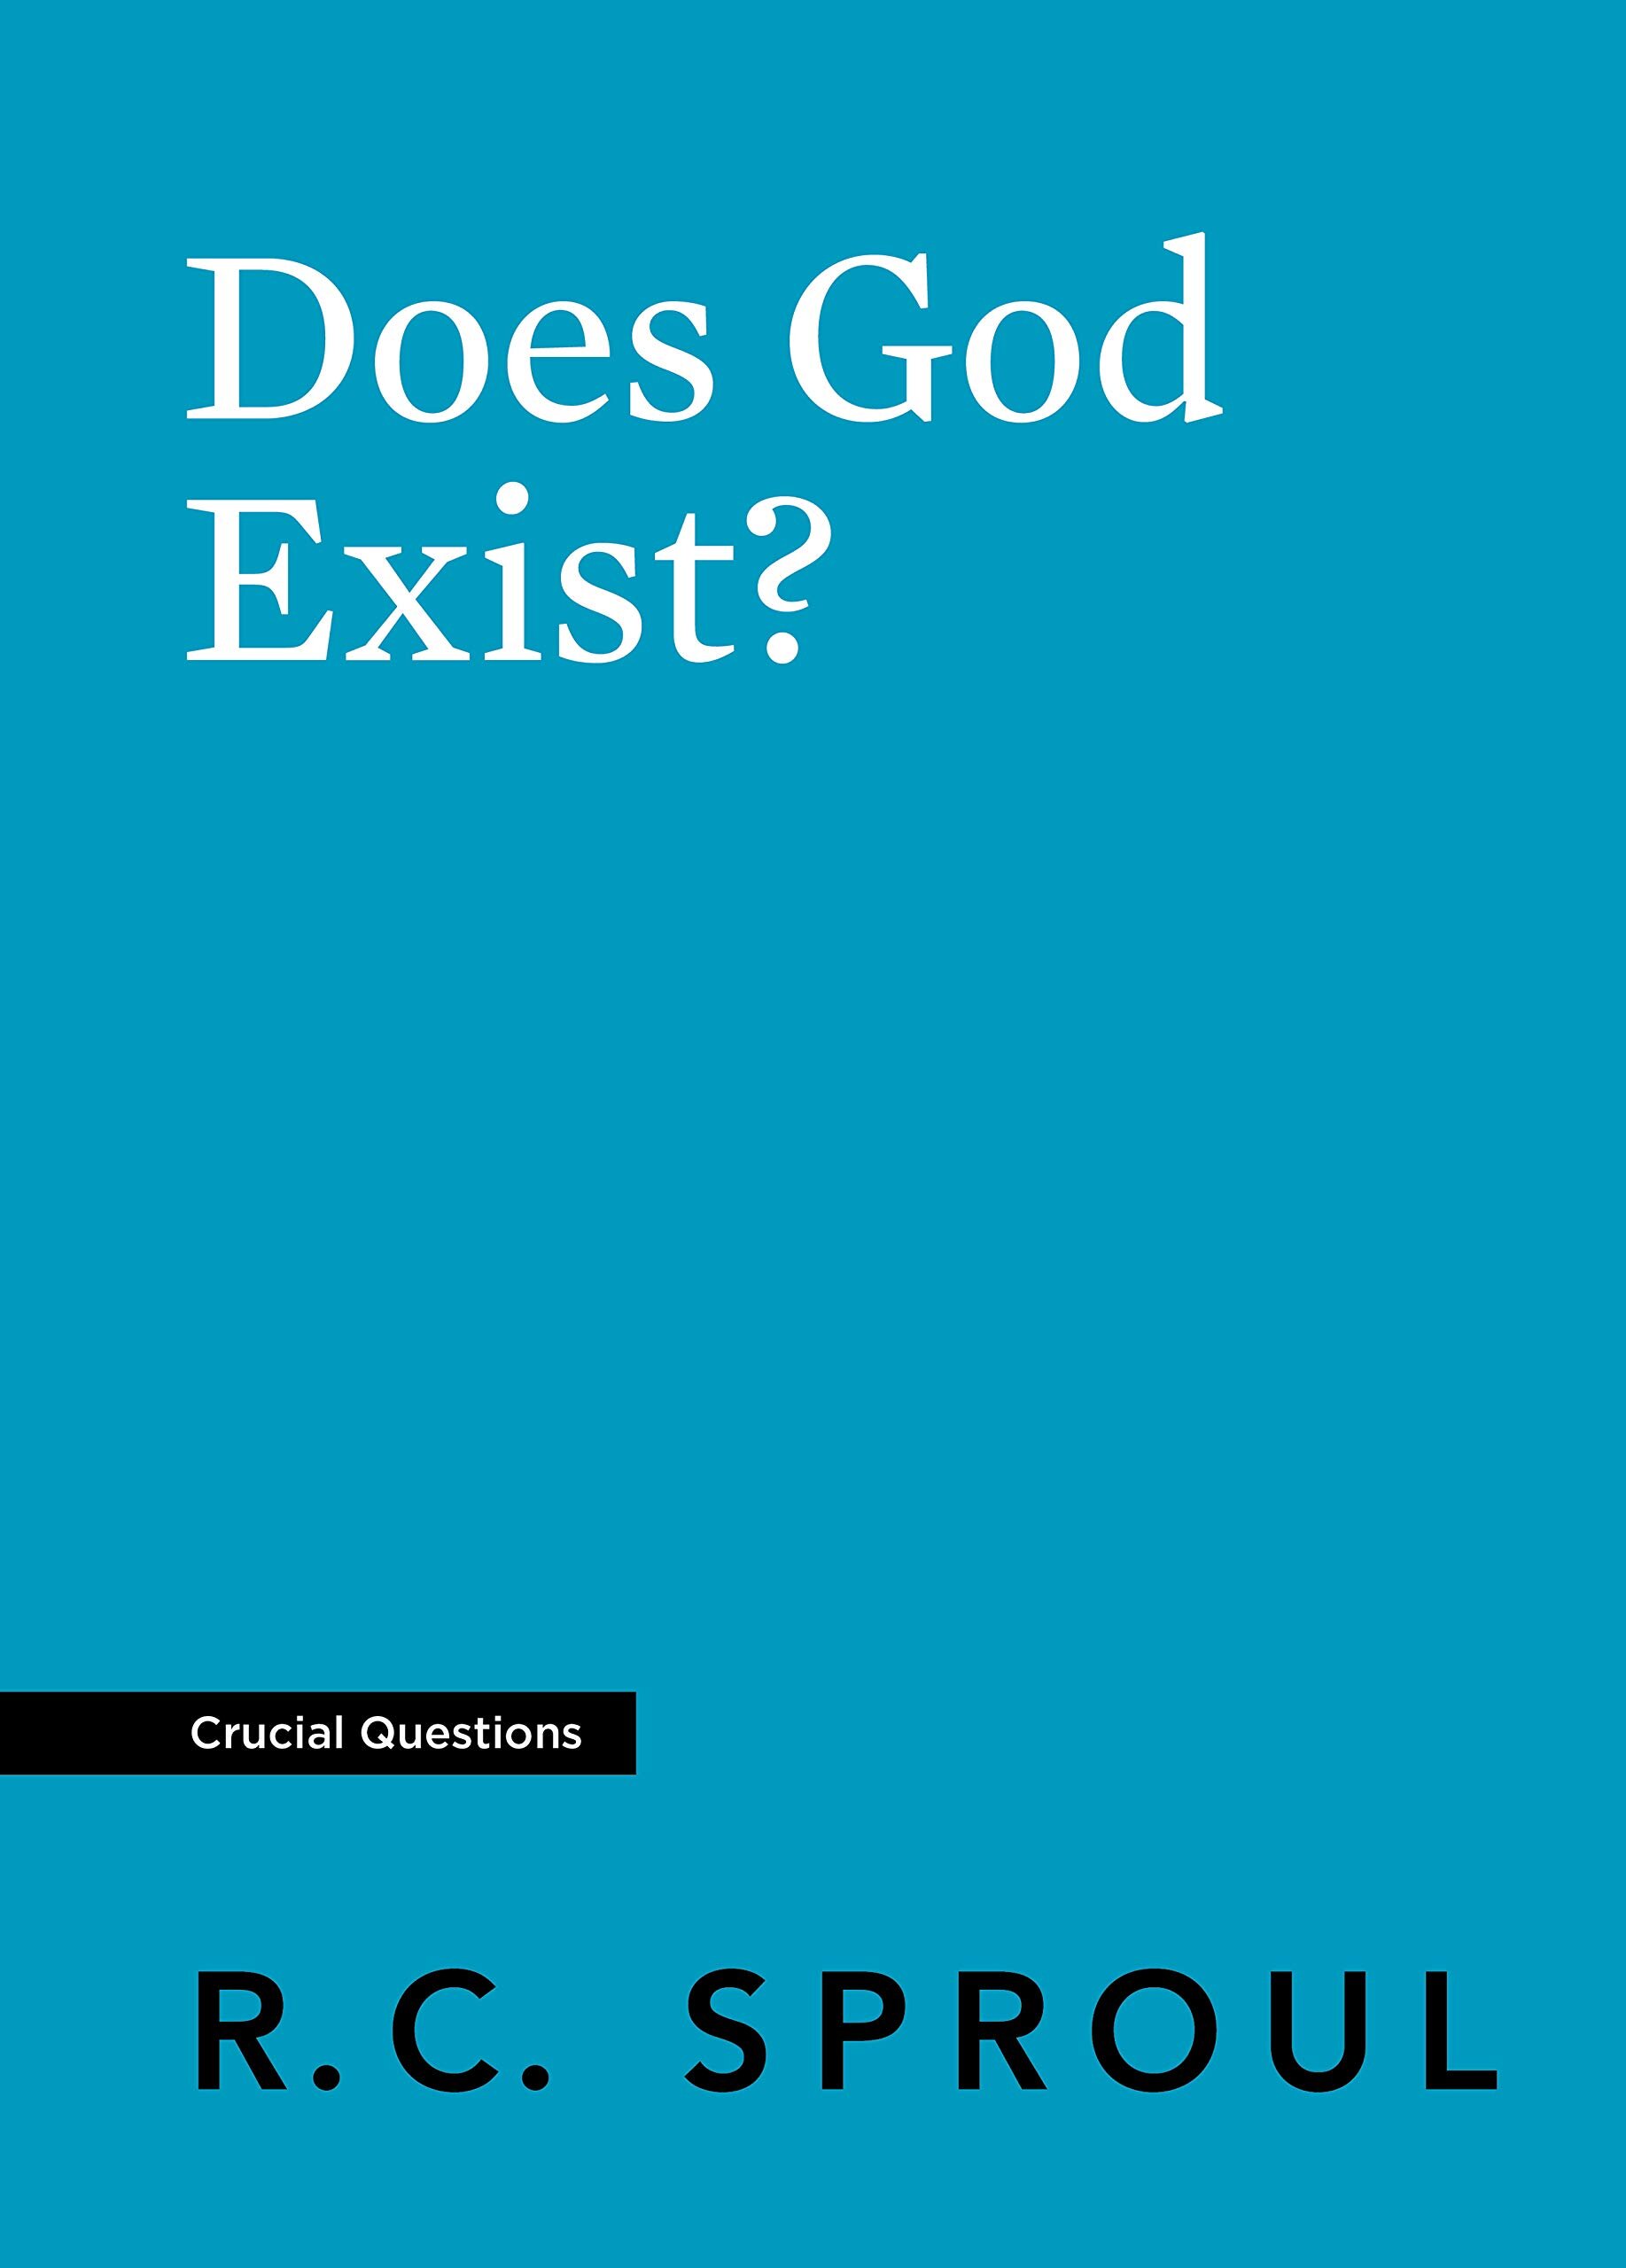 apologetics - does God exist.jpg